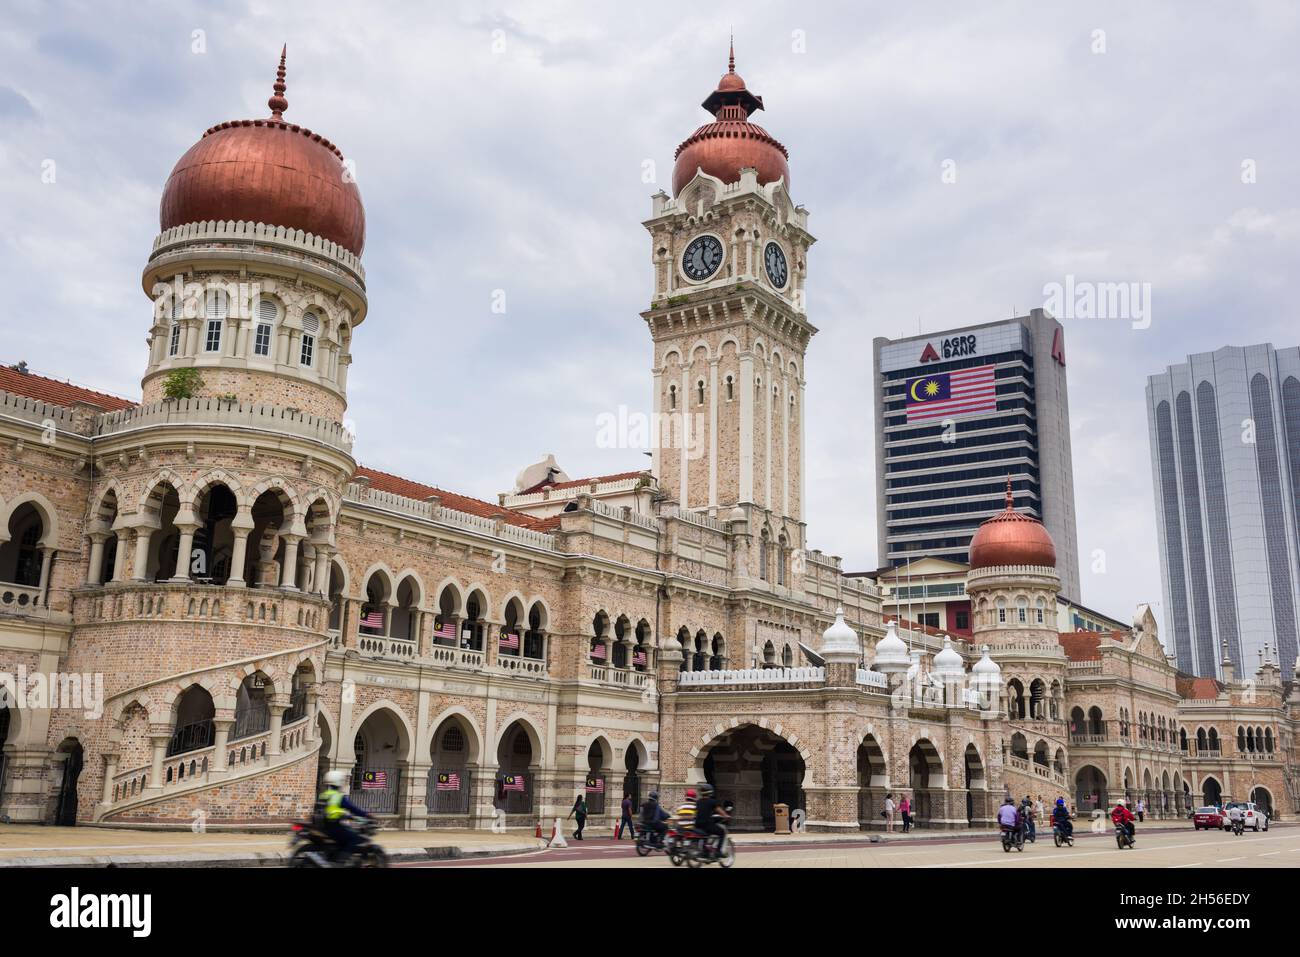 Kuala Lumpur, Malasia, 10 de agosto de 2015: Edificio Sultan Abdul Samad en la plaza Merdeka. Alberga oficinas gubernamentales y fue también el sitio anterior de la Foto de stock